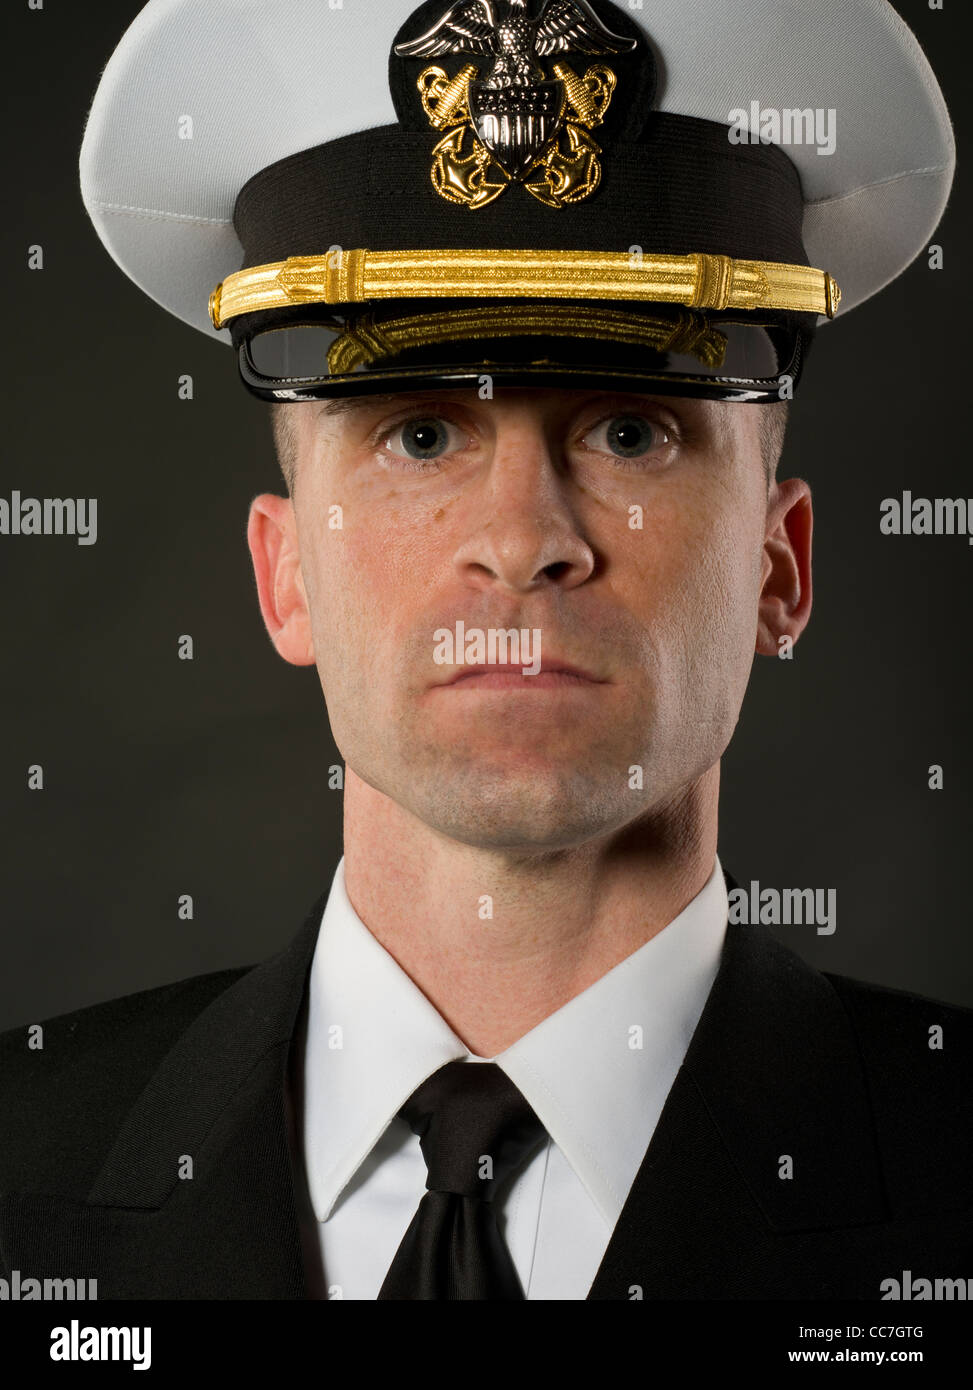 Vereinigte Staaten Marineoffizier in Service Dress Blues Uniform mit Kombination decken (Hut) Stockfoto